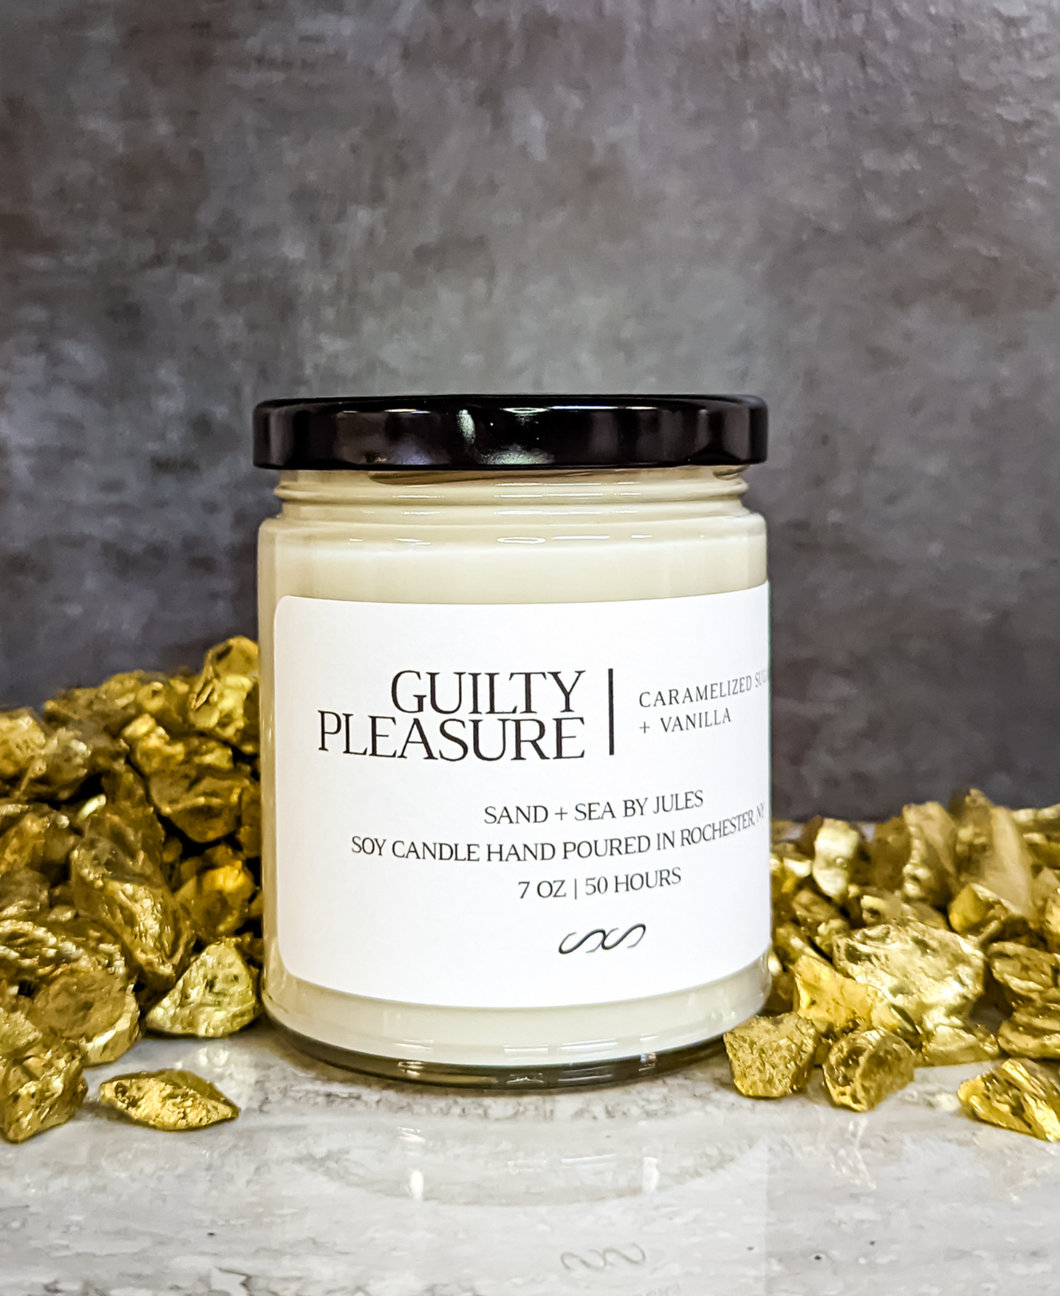 Guilty Pleasure: Caramelized Sugar + Vanilla